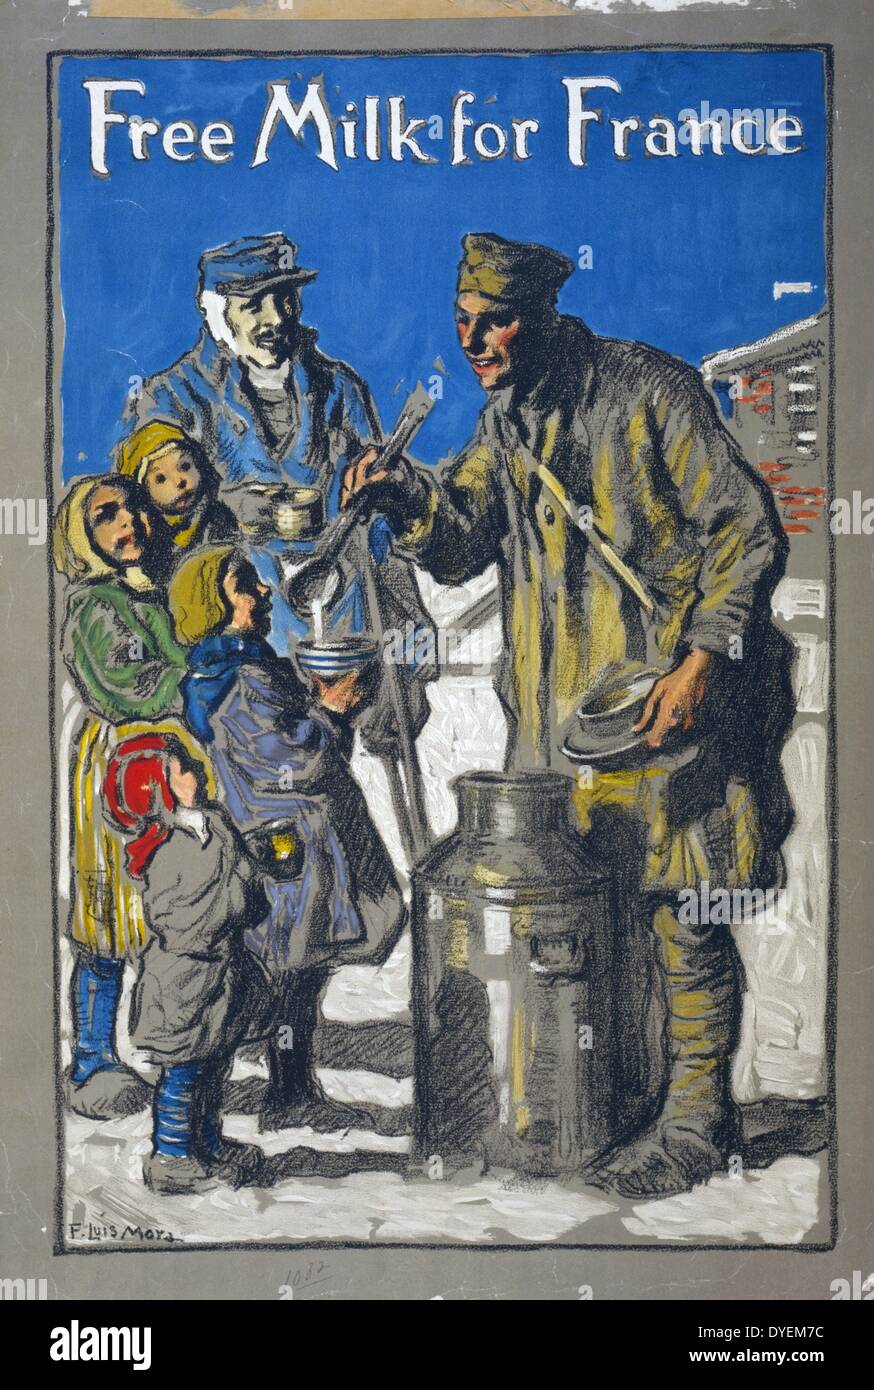 Gratuitement du lait pour la France. La première guerre mondiale poster par Francis Luis Mora, 1874-1940, l'artiste. [1918]. Affiche montrant un soldat louche de lait pour les enfants. Banque D'Images